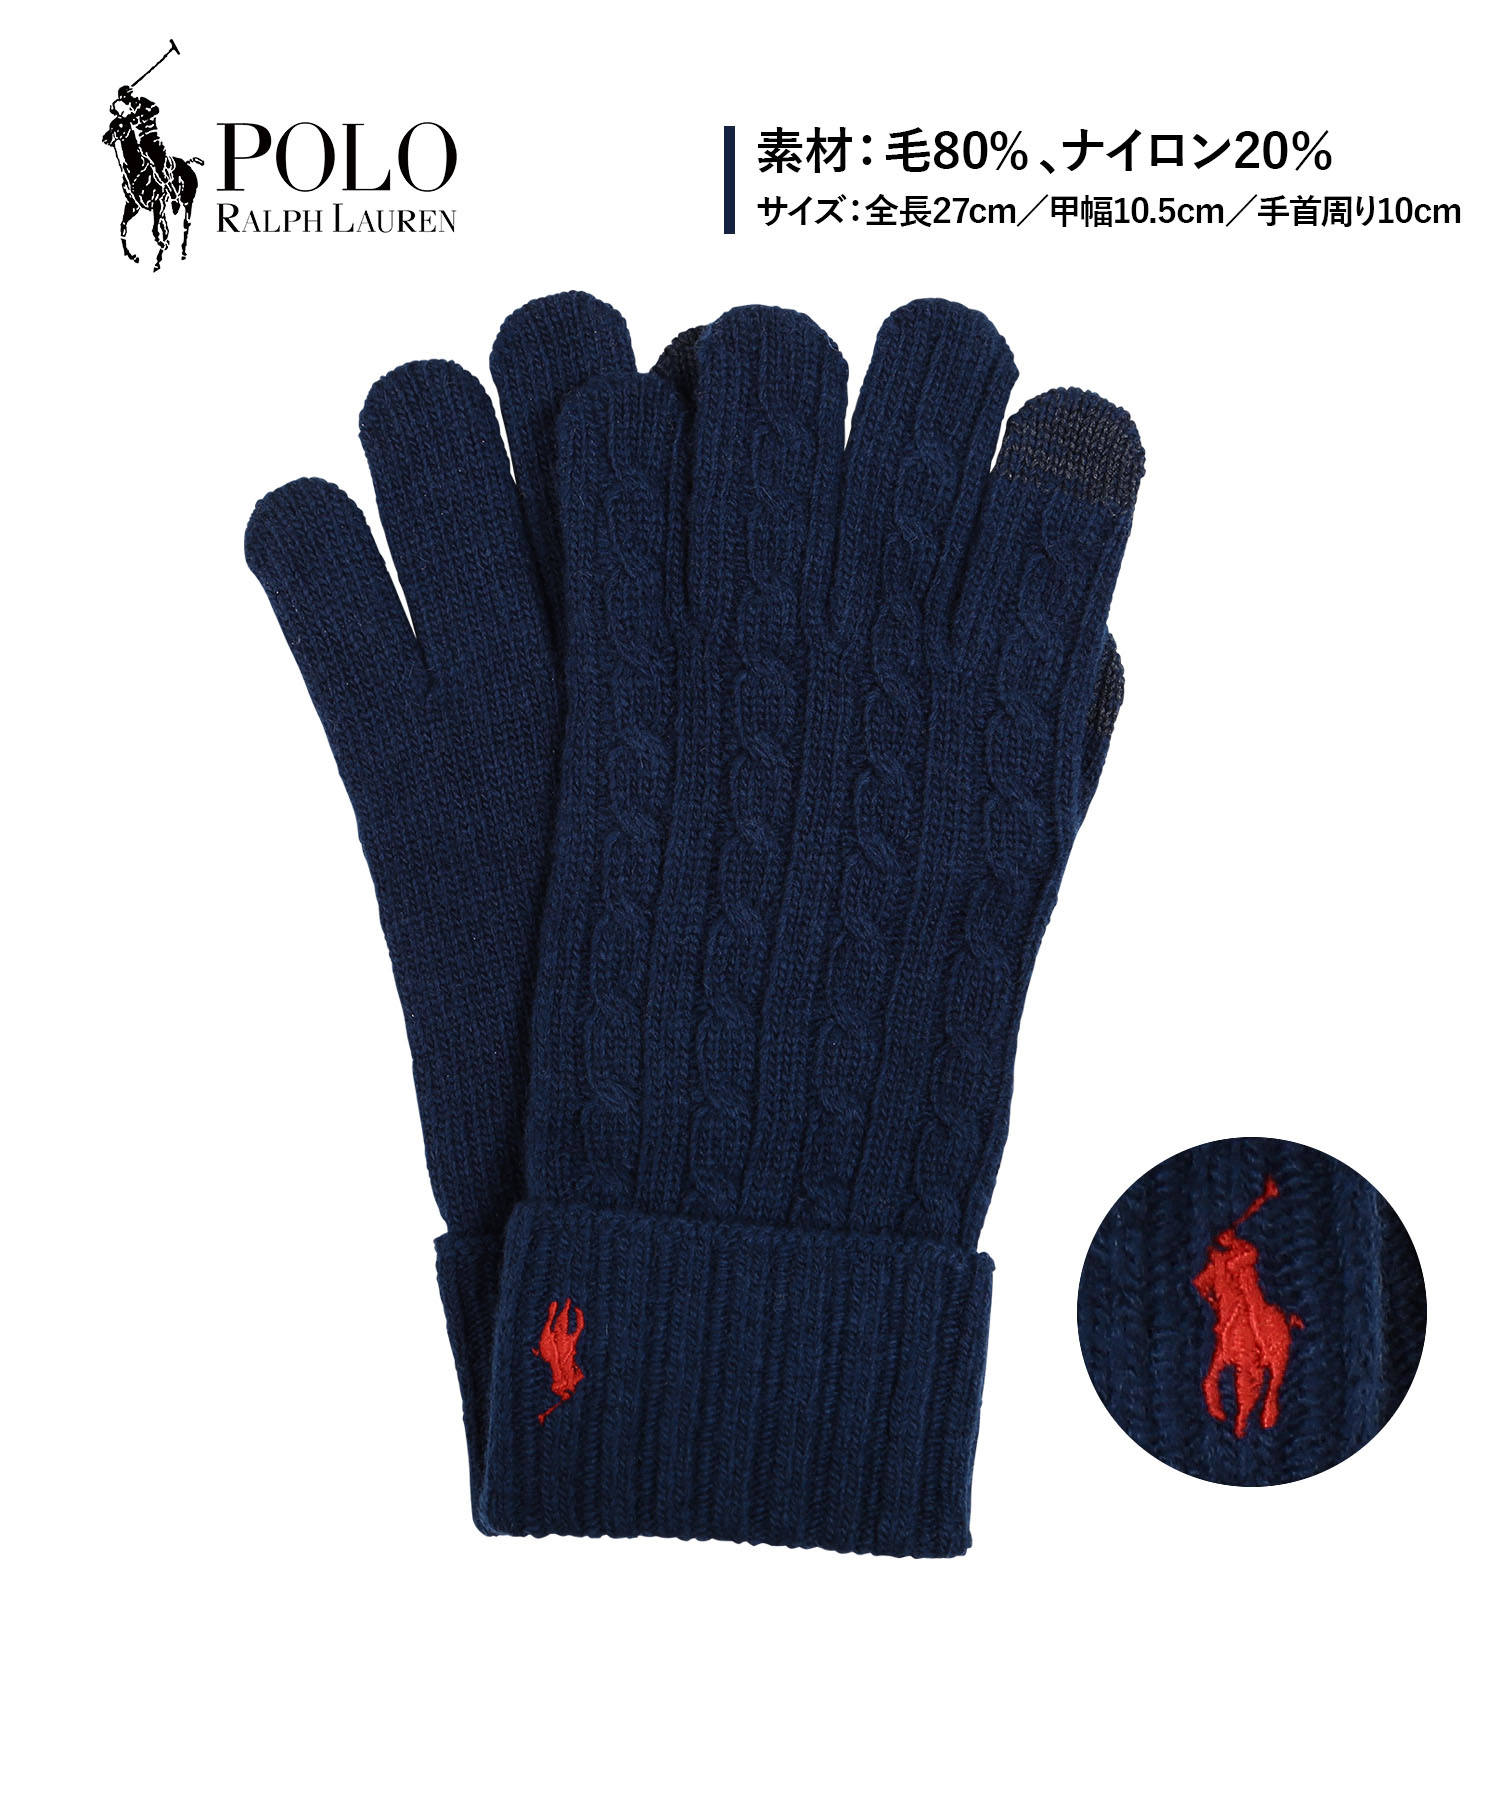 ポロ ラルフローレン POLO RALPH LAUREN 手袋 メンズ グローブ 通勤 通学 寒さ対策 ブランド ロゴ 高級 ハイブランド メール便